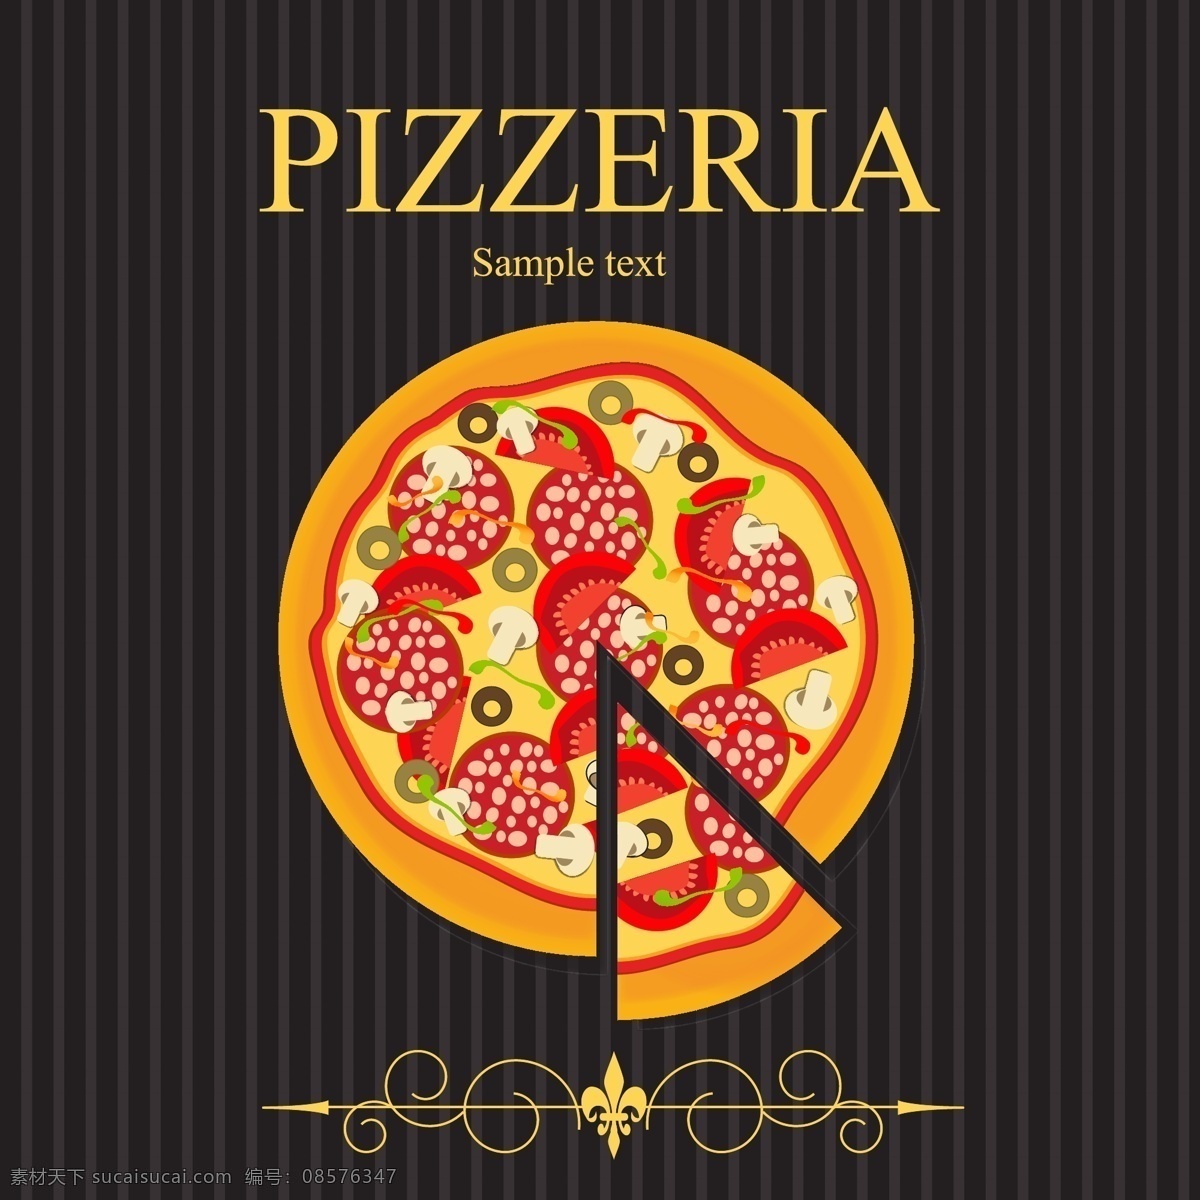 pizza 西餐 pop 背景 插画 花纹 卡通 食物 矢量素材 宣传画 矢量图 日常生活